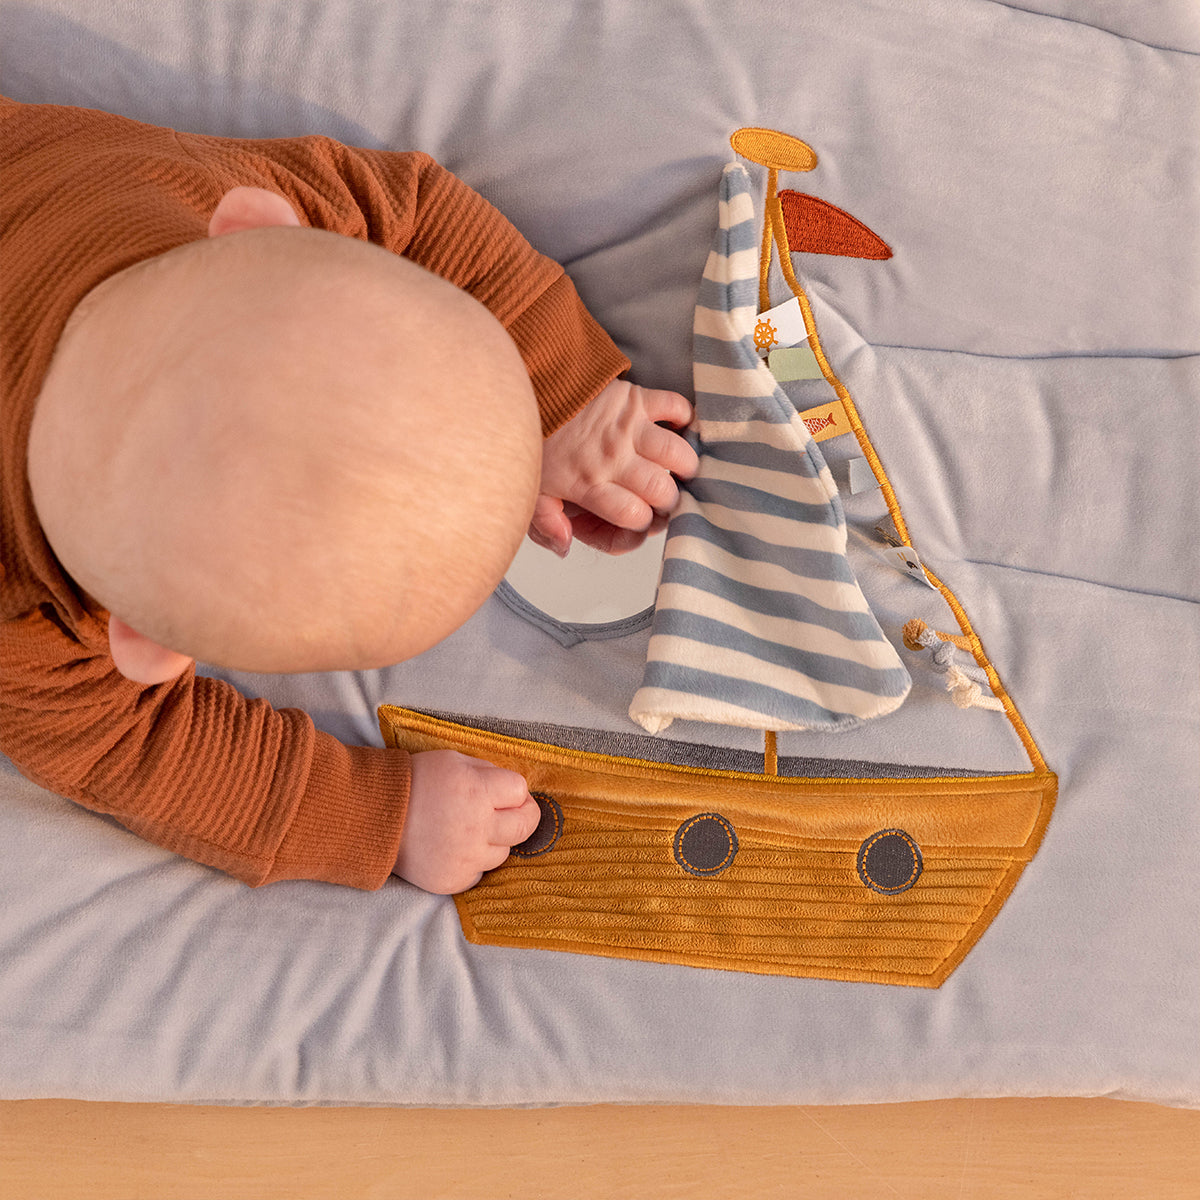 Dit gewatteerde boxkleed sailors bay van Little Dutch stimuleert de zintuigen van je kind met dank aan de vele verschillende texturen en activiteiten. Ook geschikt als speelkleed voor thuis of onderweg. VanZus